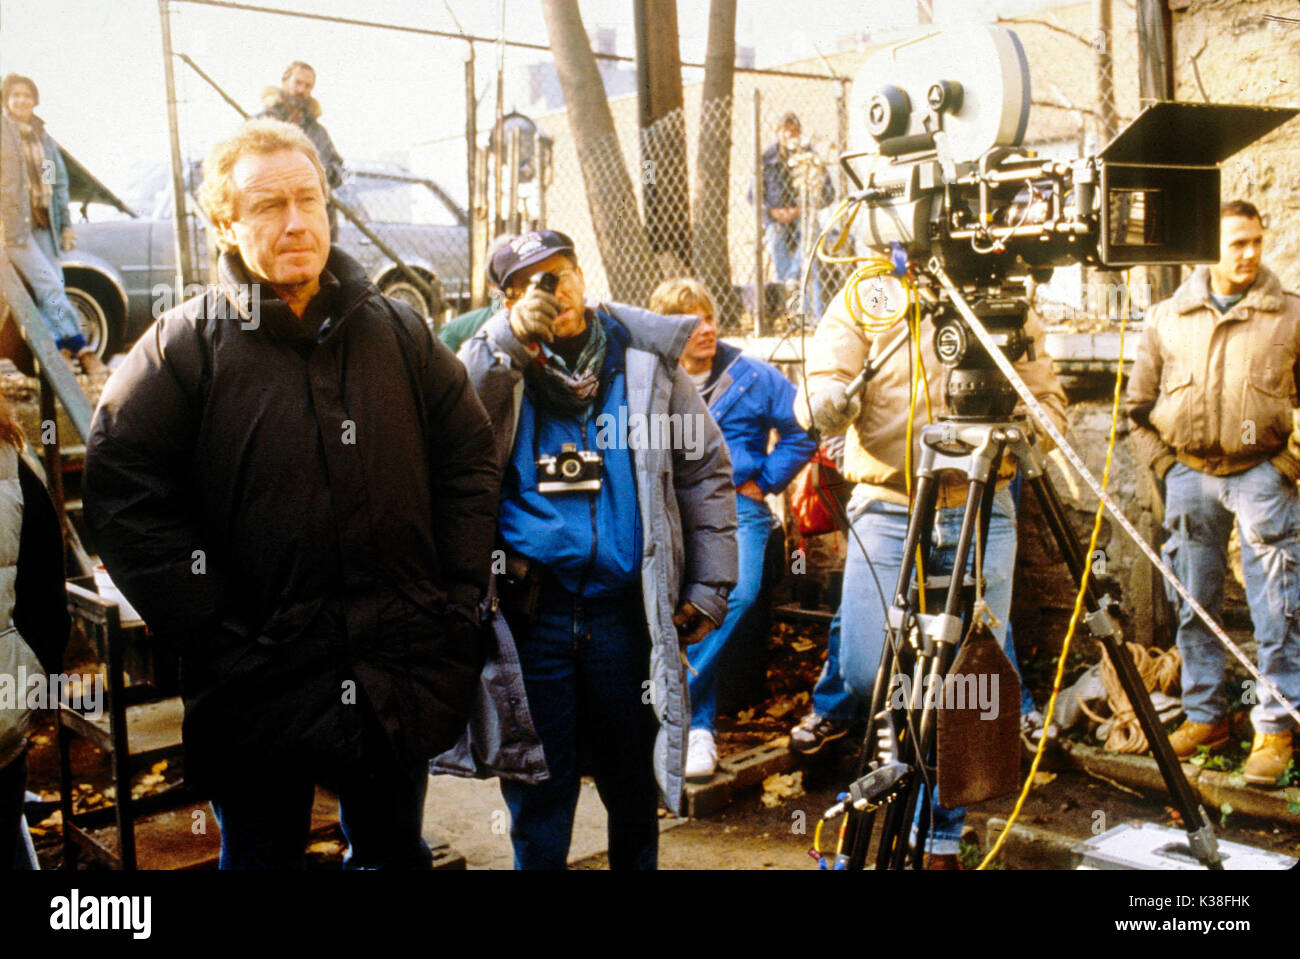 Qualcuno a vegliare su di me di Ridley Scott, direttore, sinistra data: 1987 Foto Stock